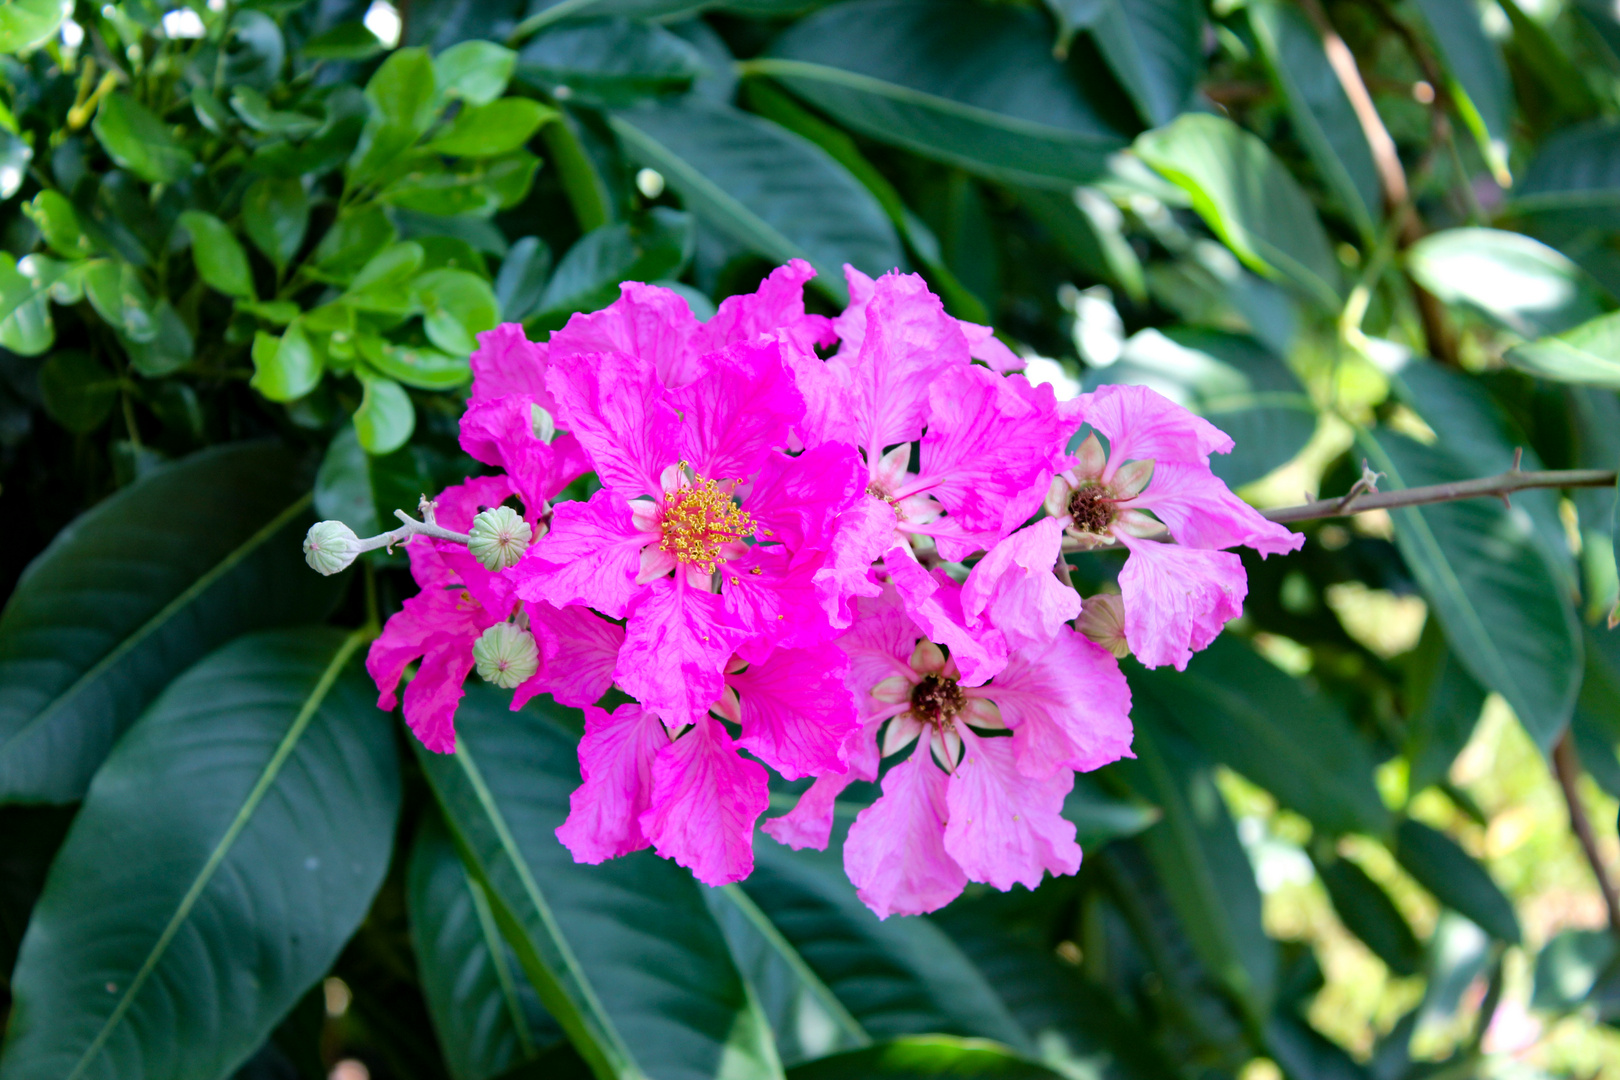 Unknown Pink Flower, Bicentennial Park, Darwin